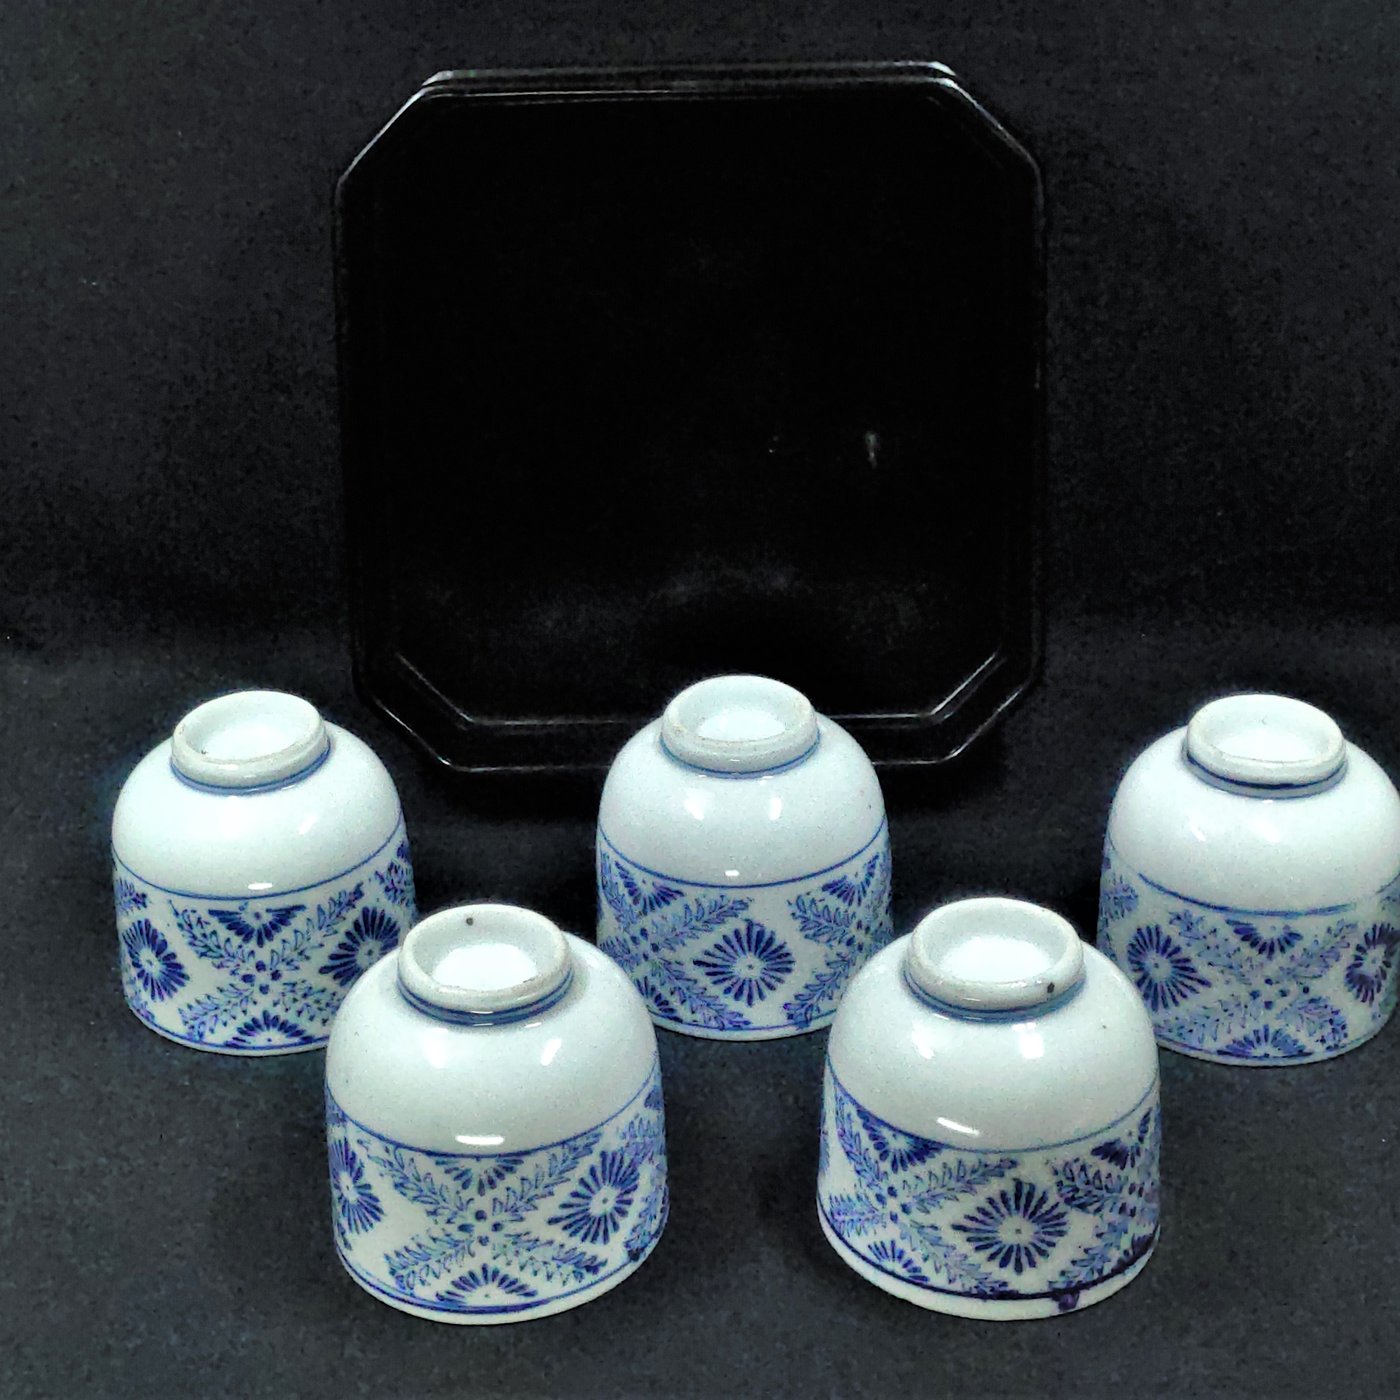 老日本昭和古民具青花瓷染付印判花草紋飾湯吞杯組五客+木胎漆器盒煎茶